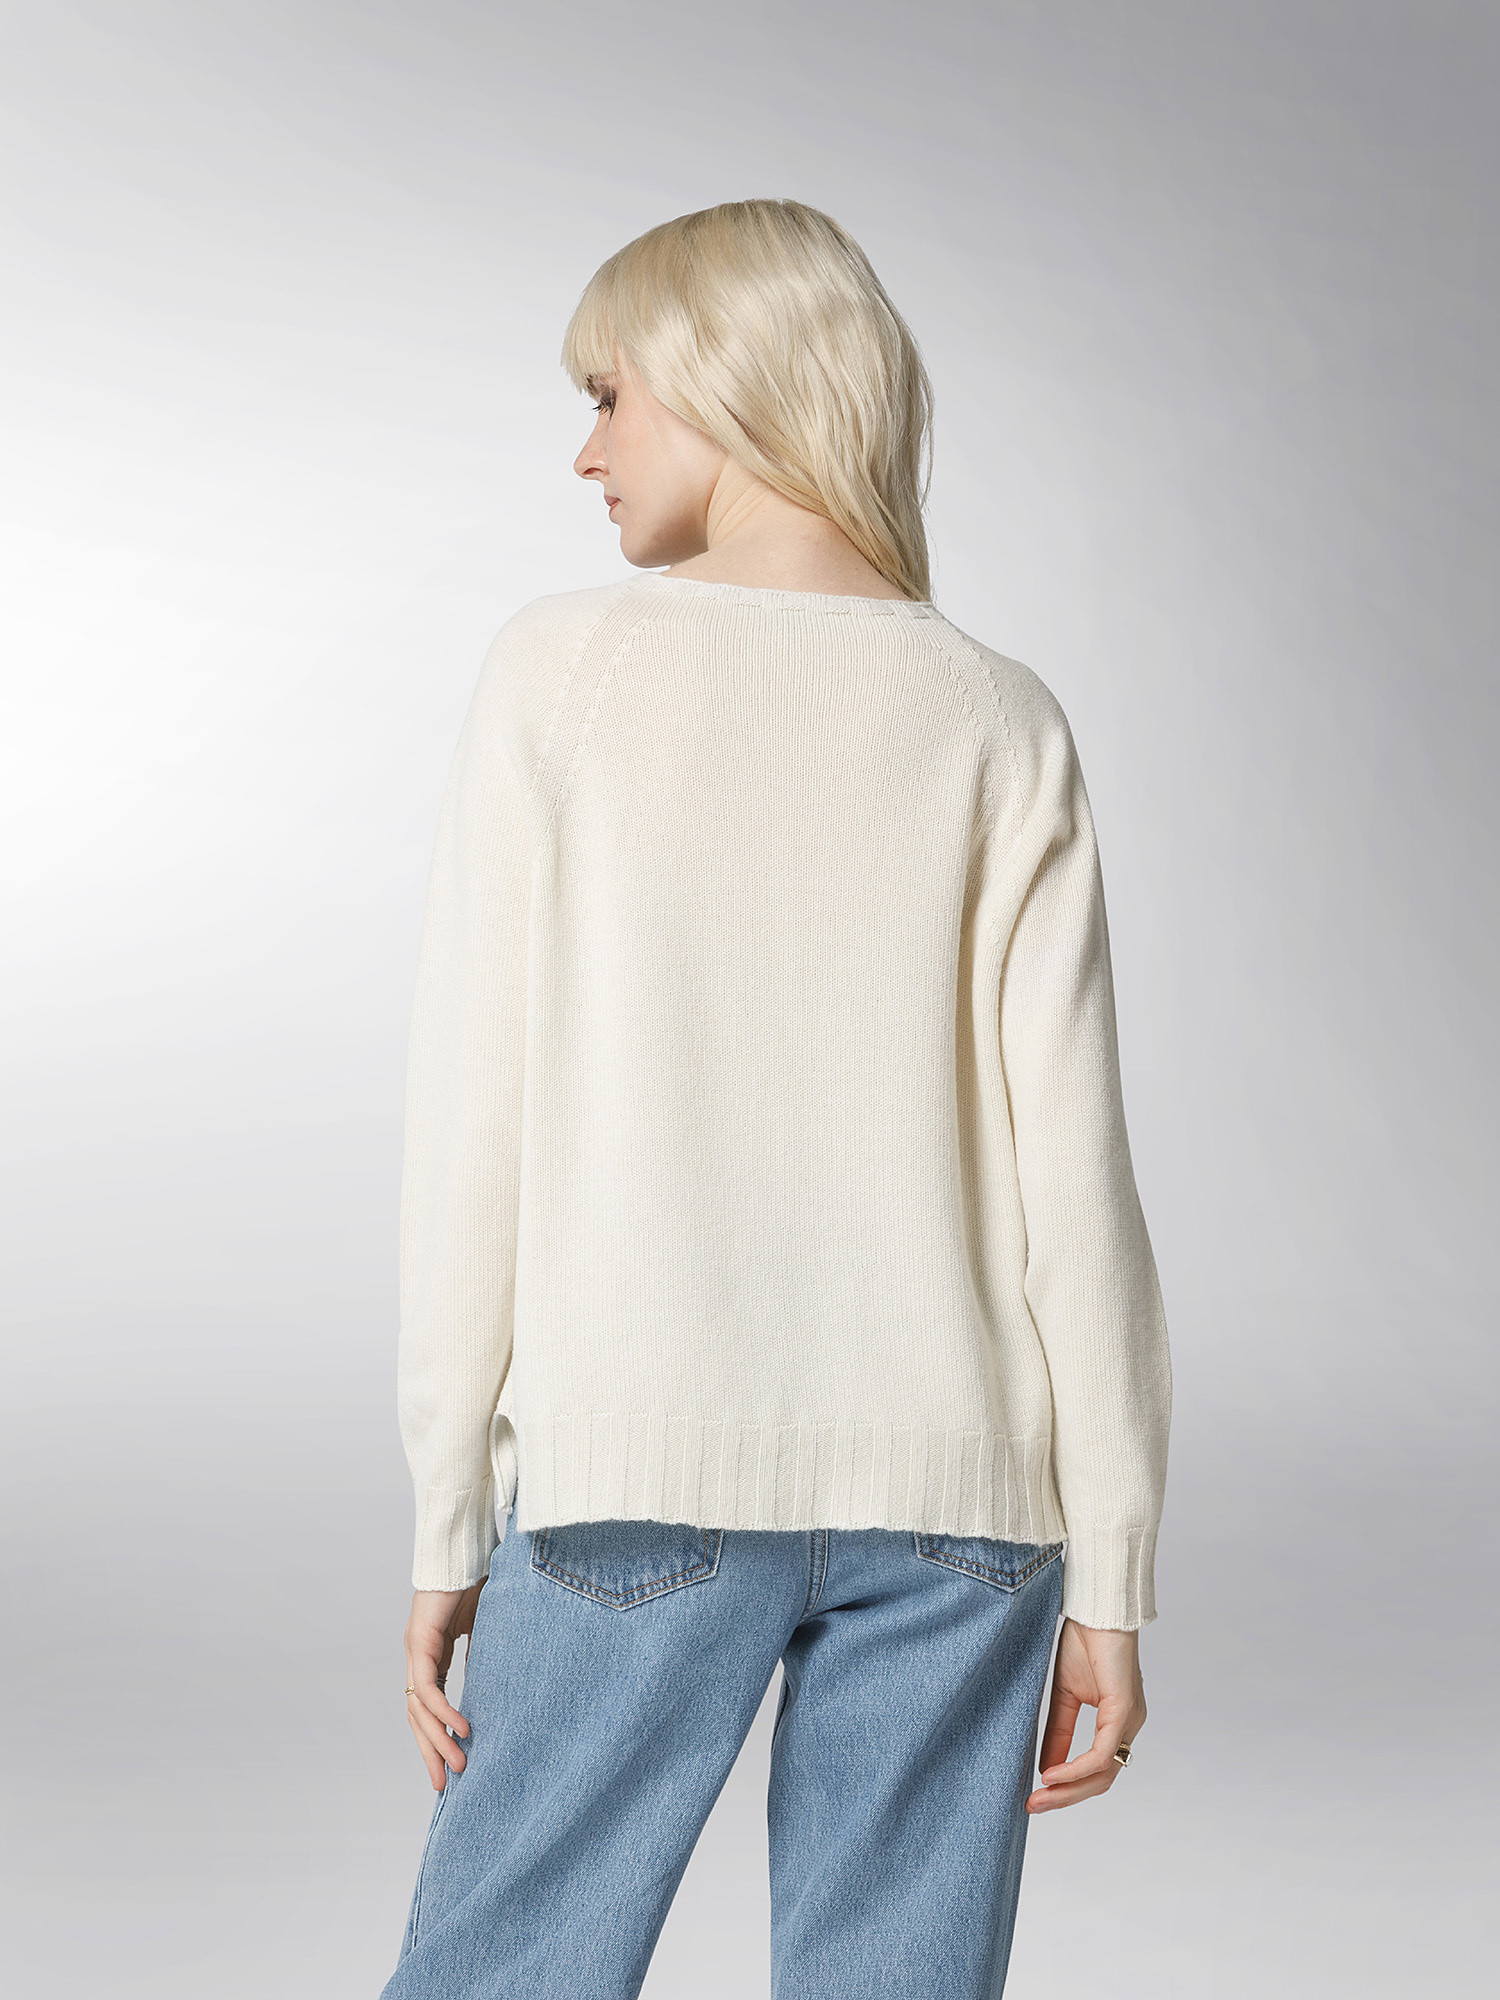 K Collection - Crewneck pullover, Ecru, large image number 5